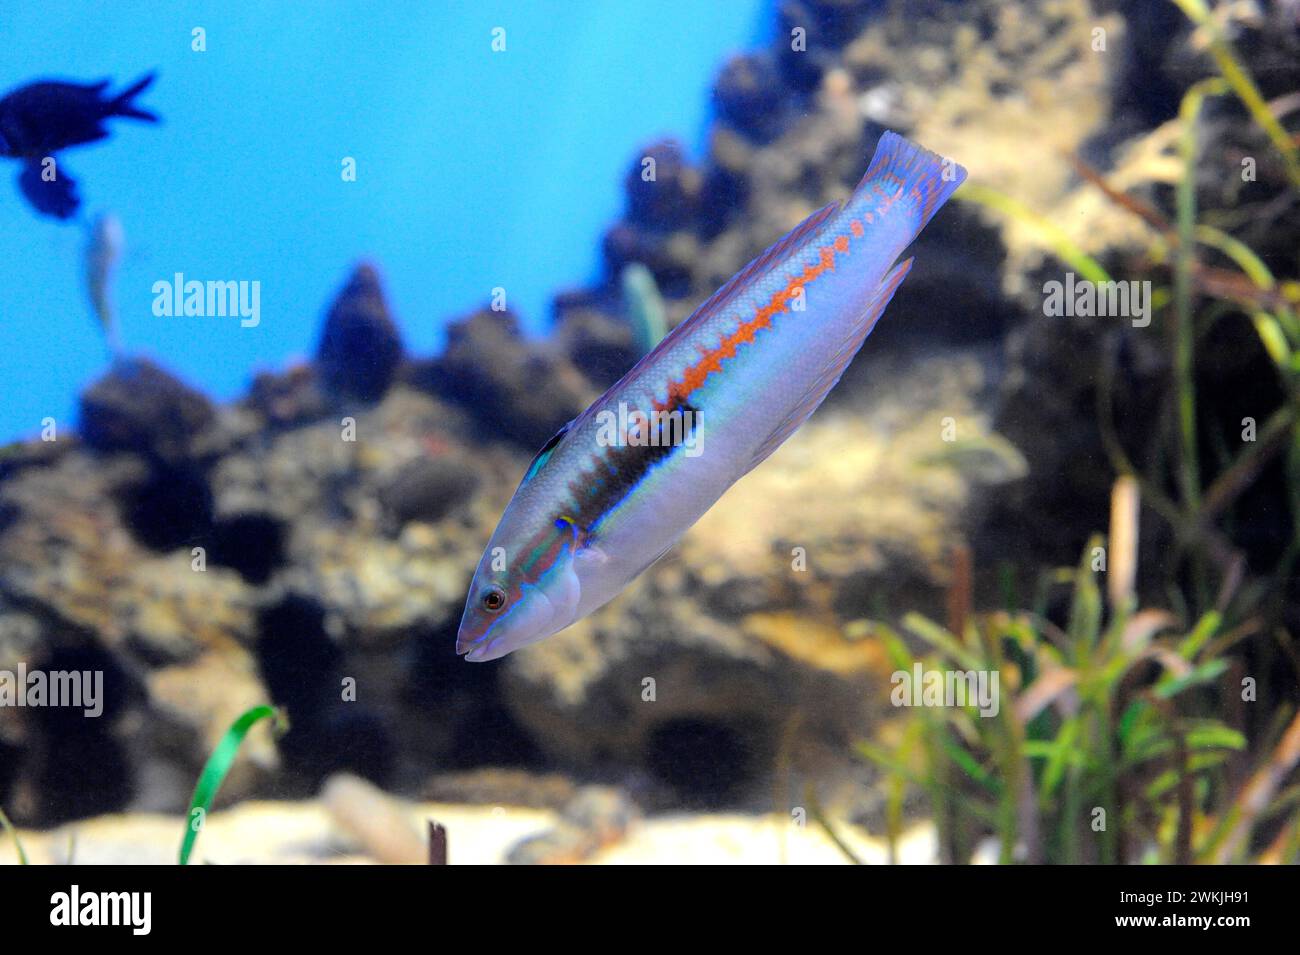 Der mediterrane Regenbogenfisch (Coris julis) ist ein fleischfressender Meeresfisch, der im Mittelmeer und im Nordostatlantik beheimatet ist. Männliche Probe. Stockfoto